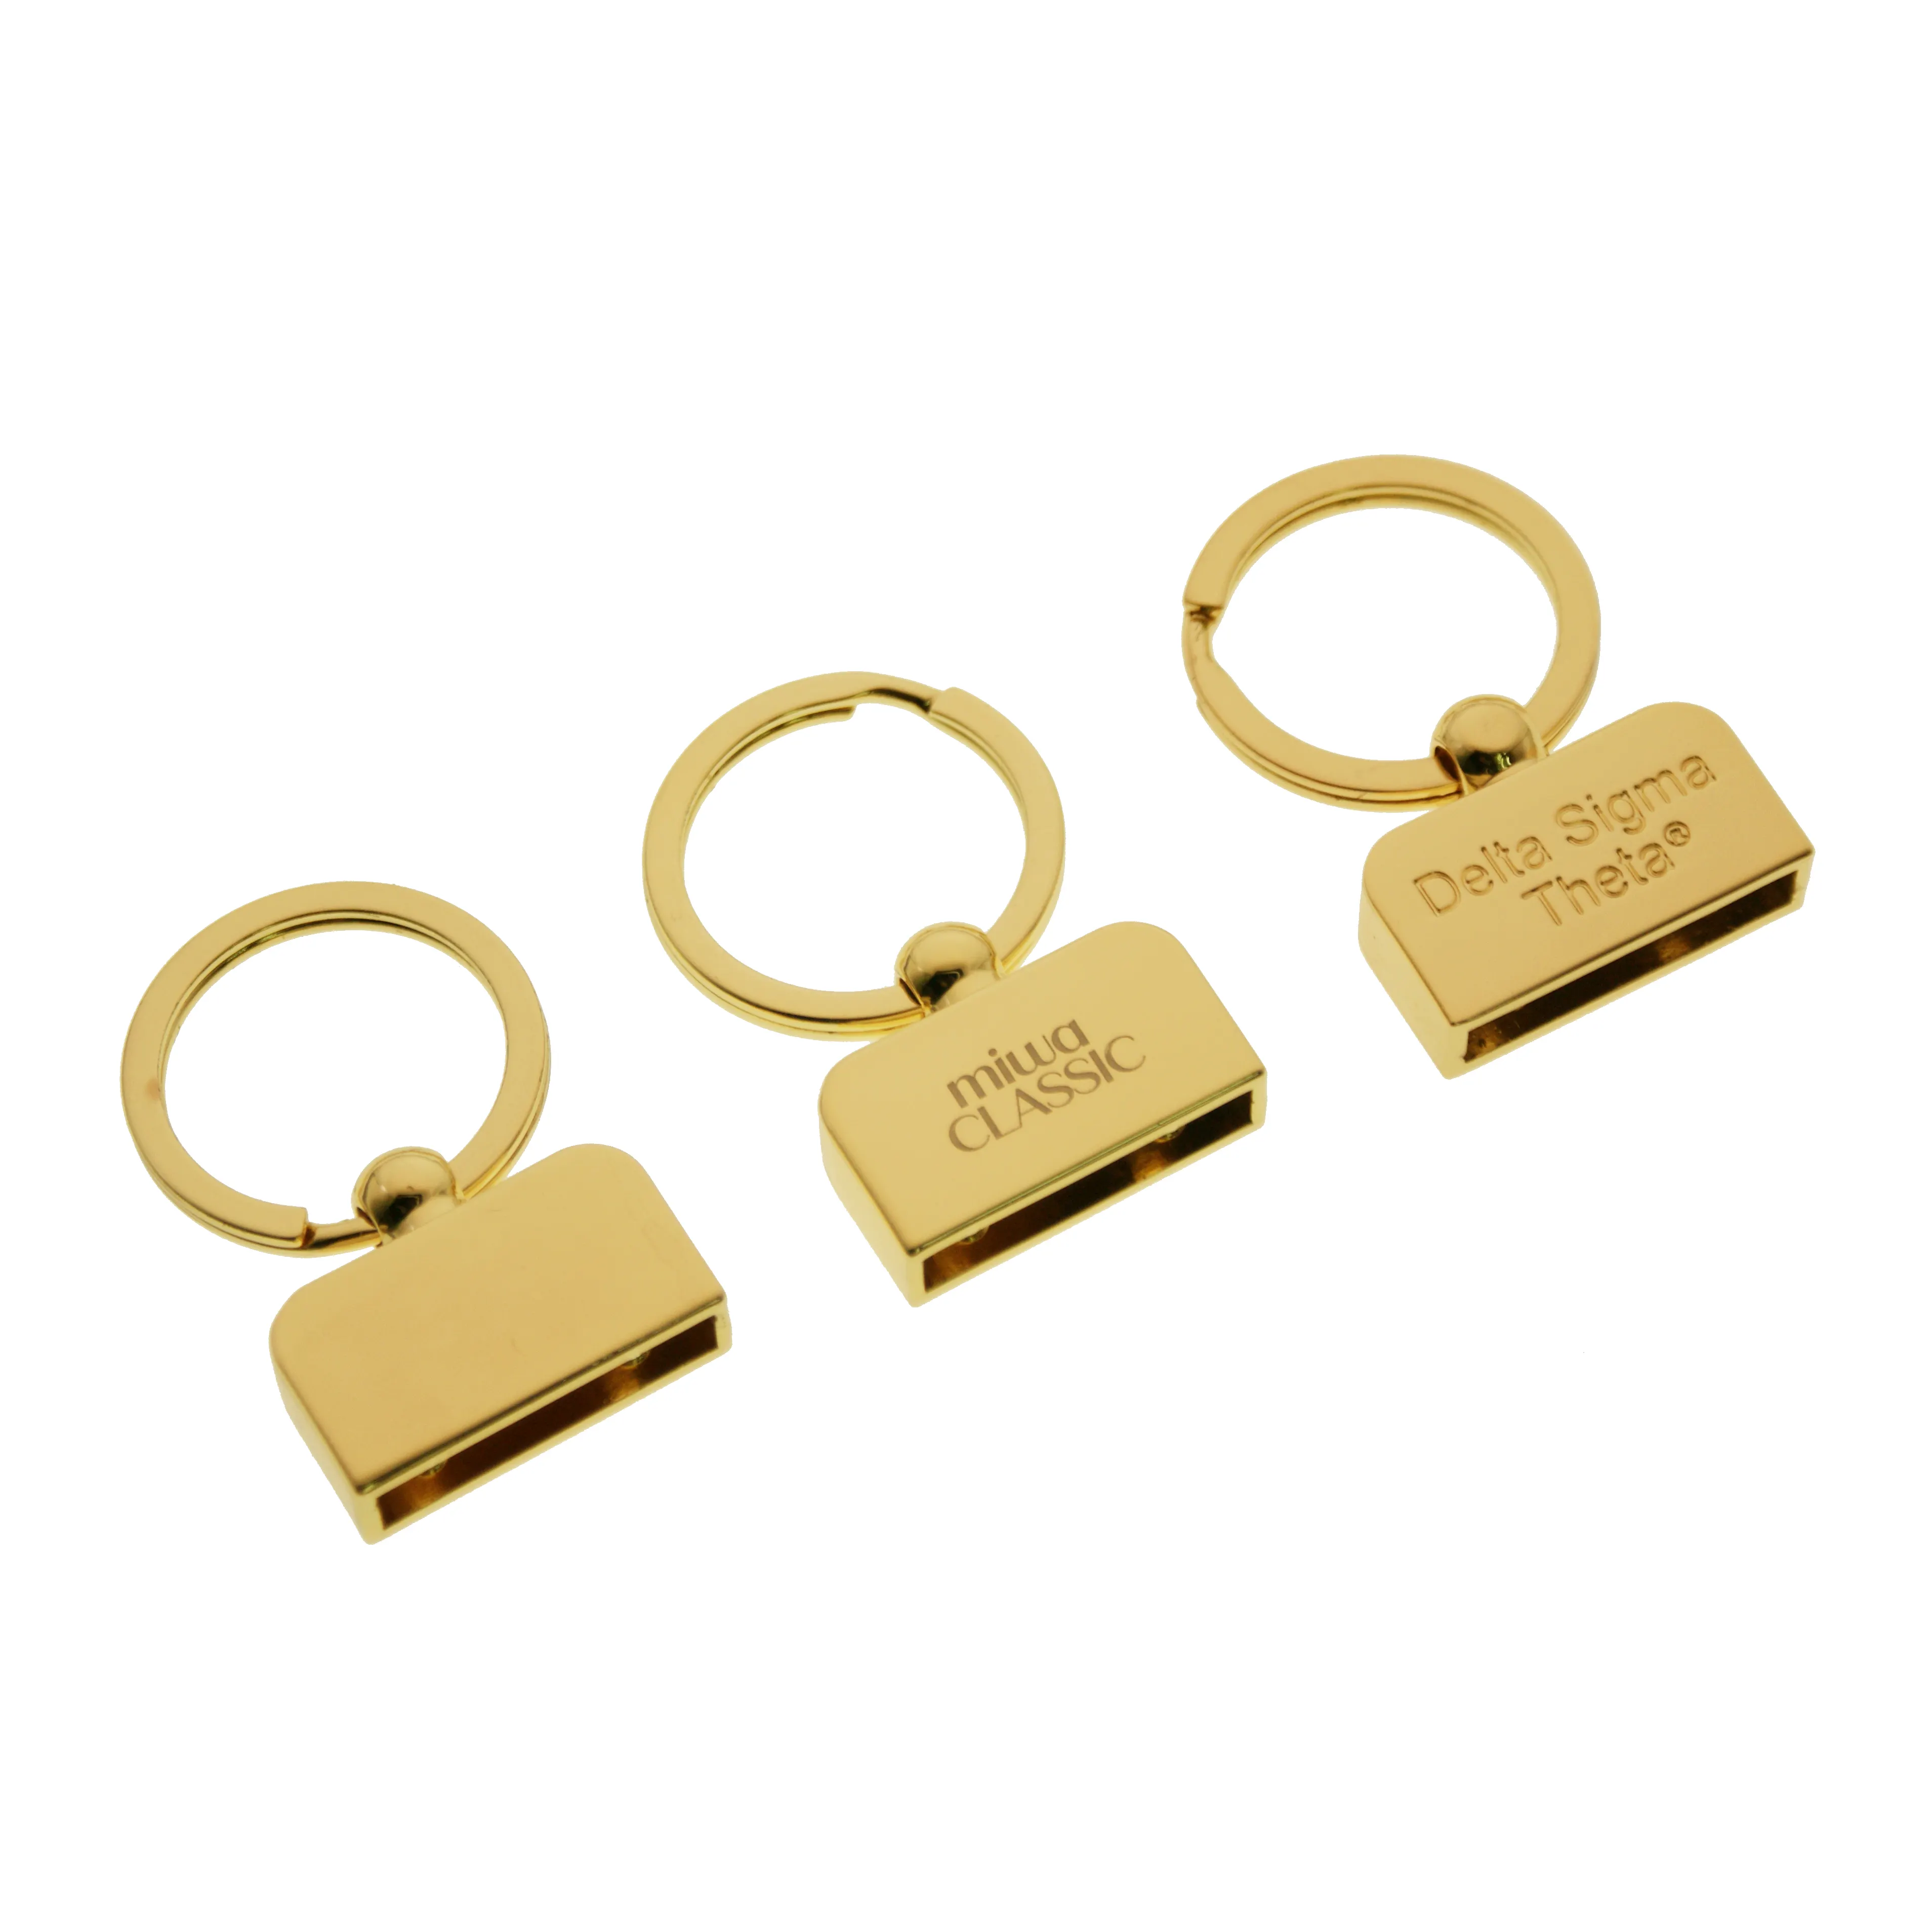 Fabrika özel şekil anahtarlık donanım Metal ZincAlloy anahtarlık hediyeler için anahtarlık aksesuarları çanta anahtarlık kanca ile bölünmüş yüzük